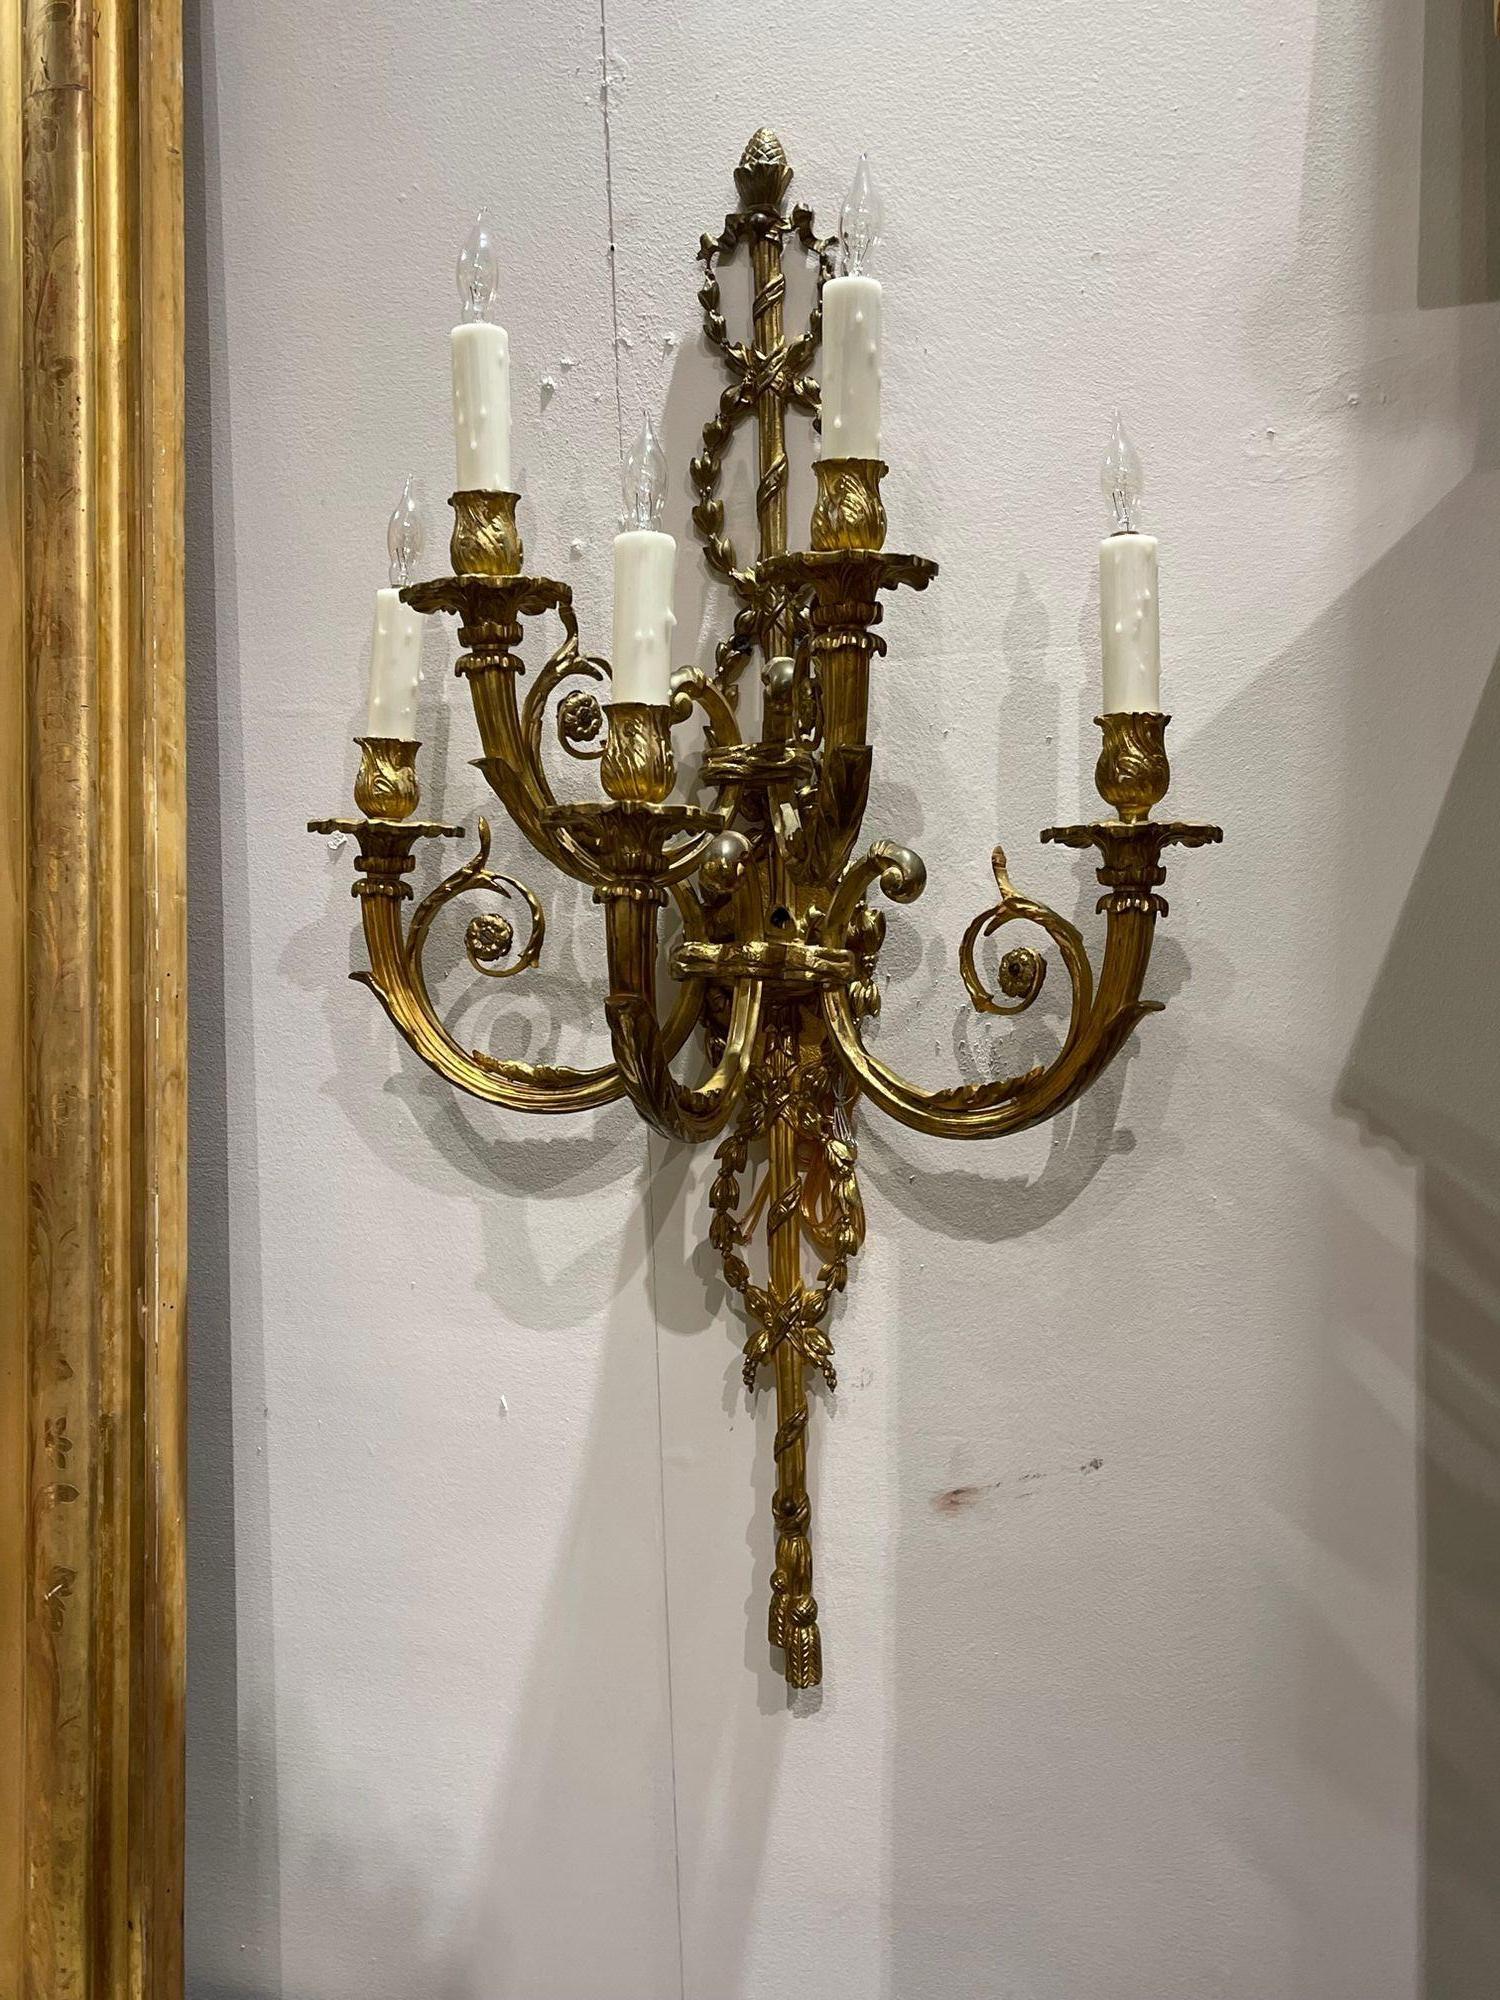 Exquise paire d'appliques murales en bronze doré de style Louis XVI, datant du 19e siècle, avec 5 lumières. De magnifiques motifs, notamment des motifs floraux, une corde décorative et un gland au sommet. Un véritable classique qui ne manquera pas